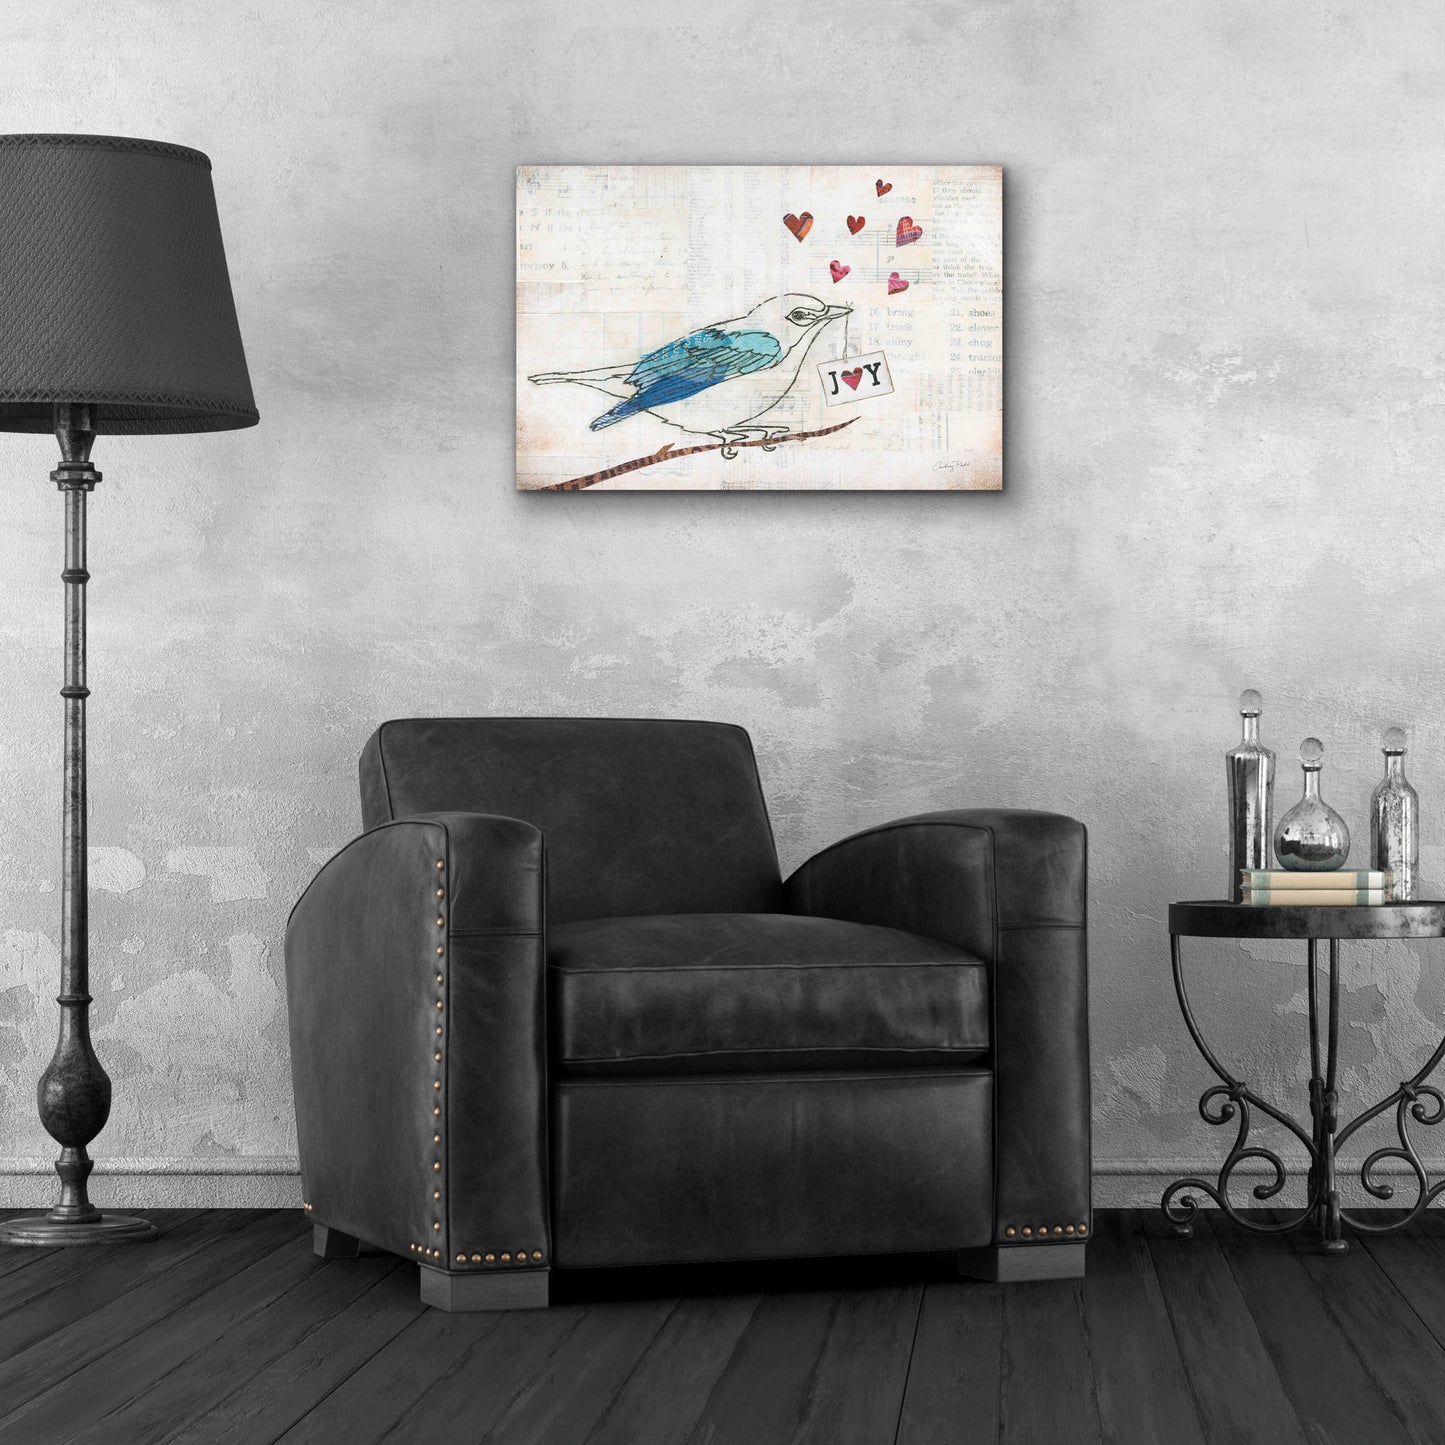 Epic Art 'Love Birds I Joy' by Courtney Prahl, Acrylic Glass Wall Art,24x16